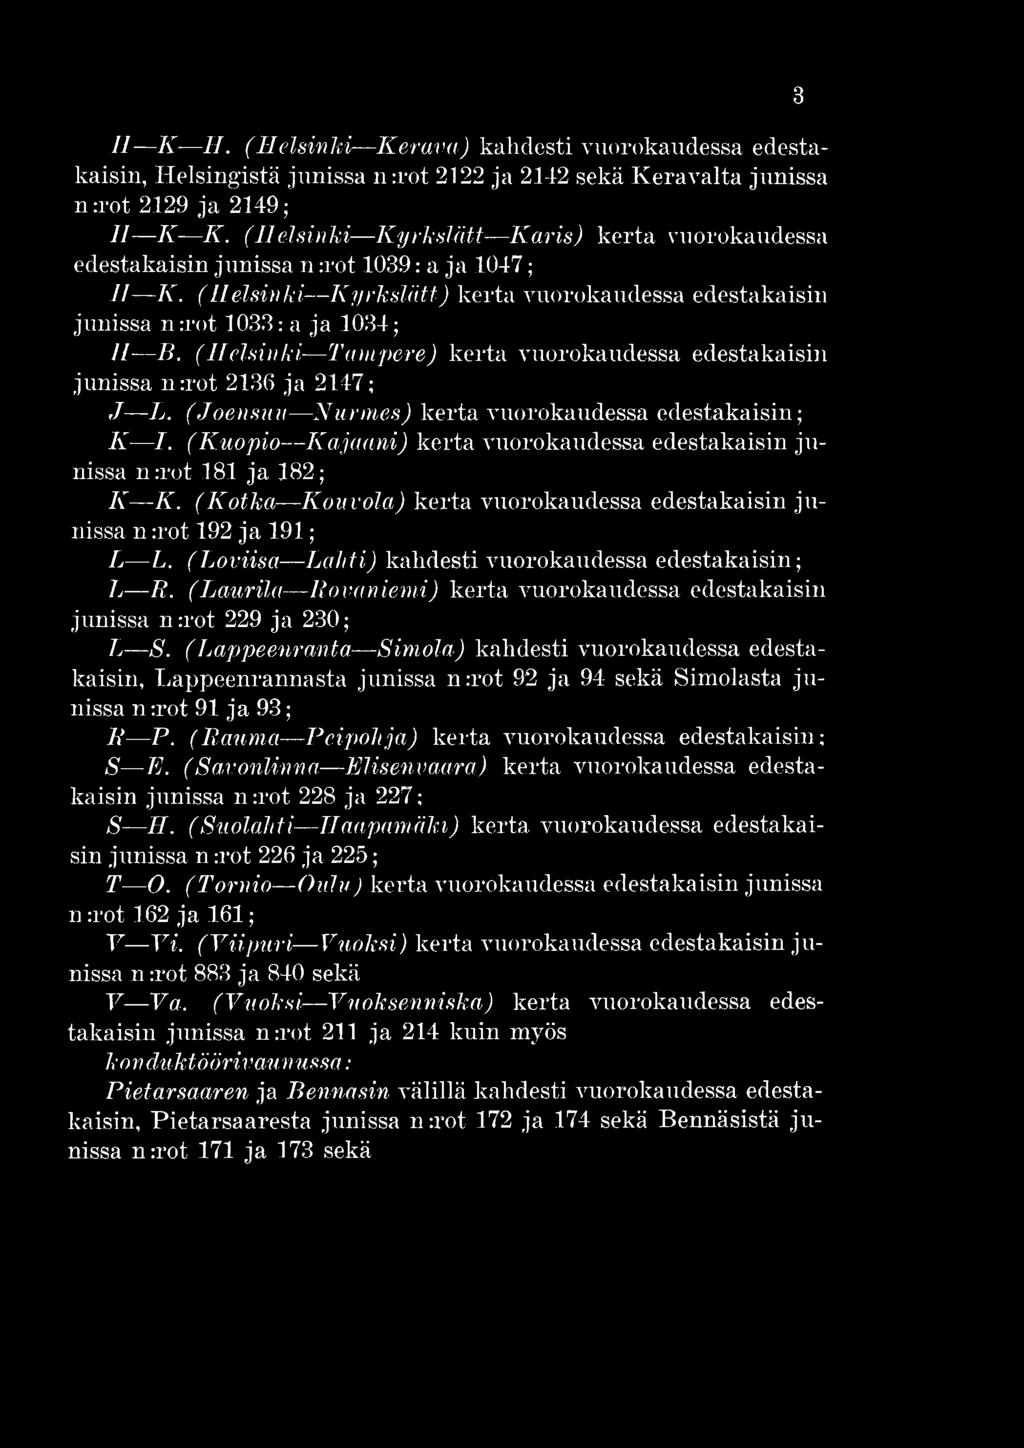 (Loviisa L ahti) kahdesti vuorokaudessa edestakaisin; Lj R. (Laurila Rovaniemi) kerta vuorokaudessa edestakaisin junissa n :rot 229 ja 230; L S.